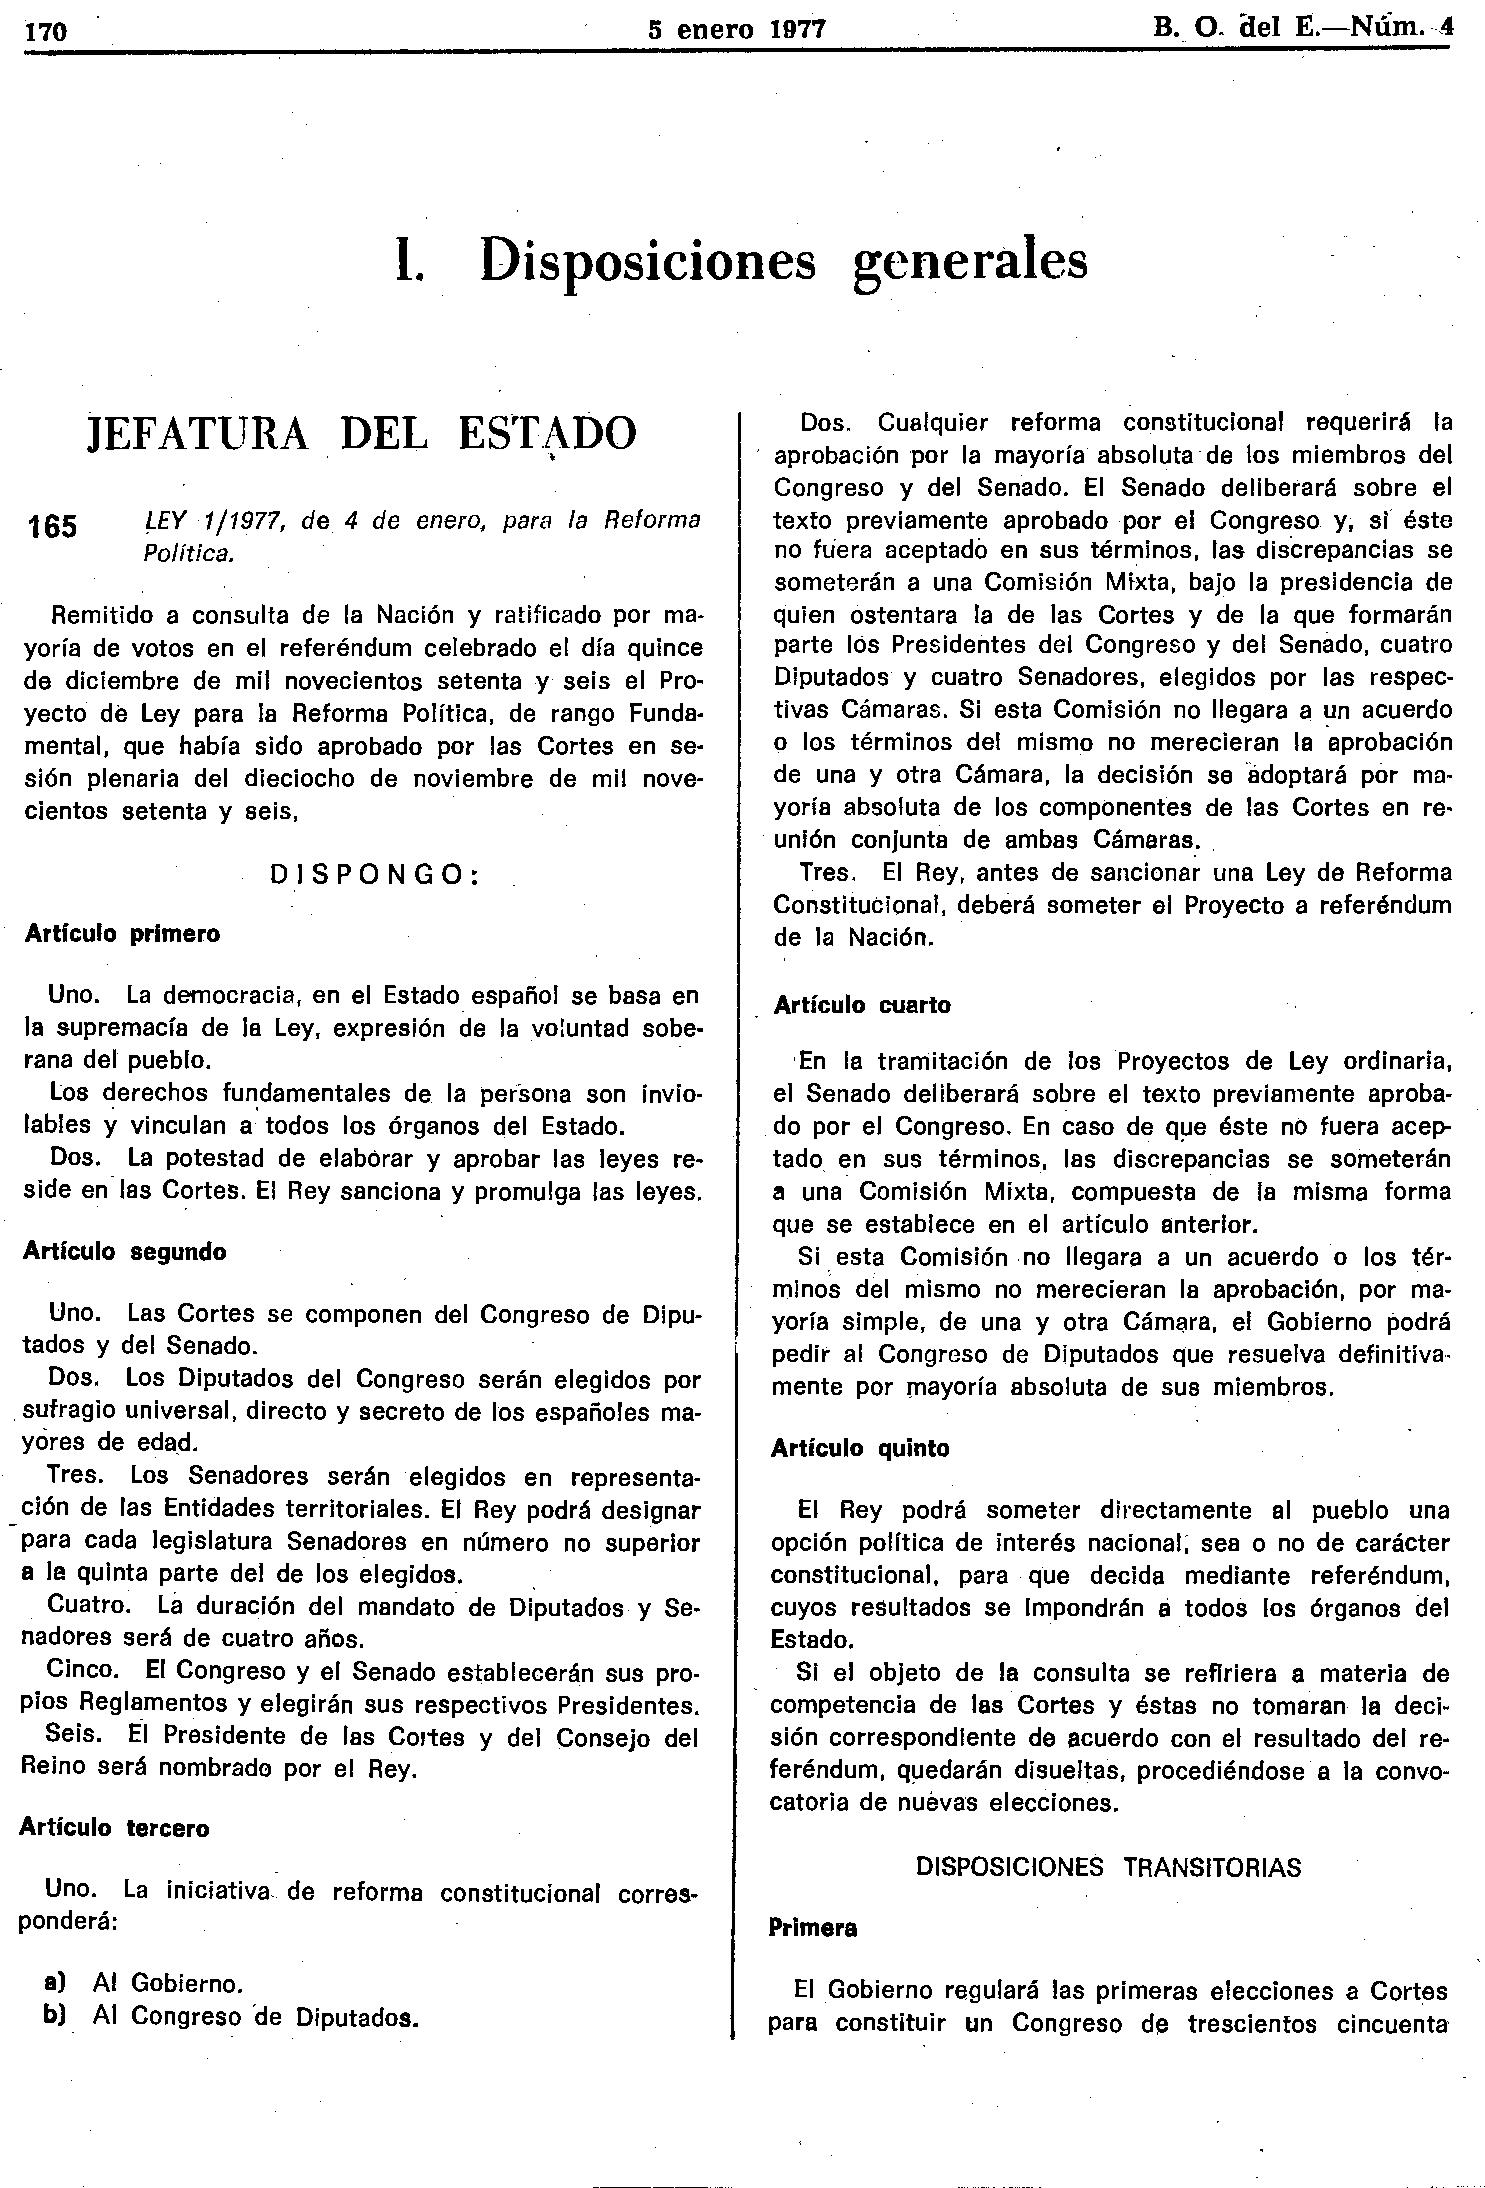 18 de noviembre de 1976 En España se aprobaba la Ley de Reforma Política para poner fin al franquismo